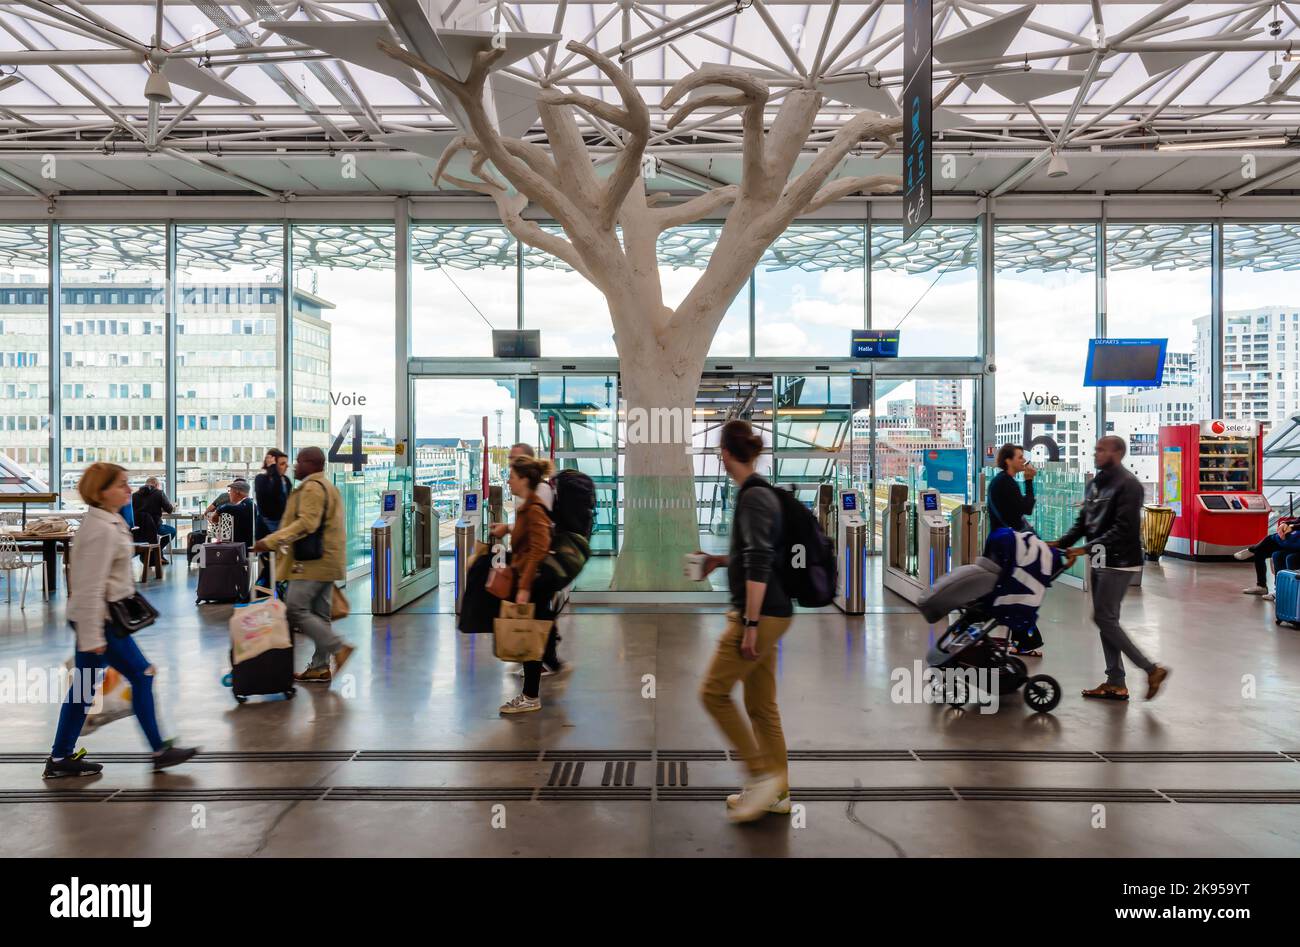 Les voyageurs qui se promèneront devant un pilier en forme d'arbre dans le hall de la gare SNCF de Nantes, en France, conçu par l'architecte Rudy Ricciotti. Banque D'Images